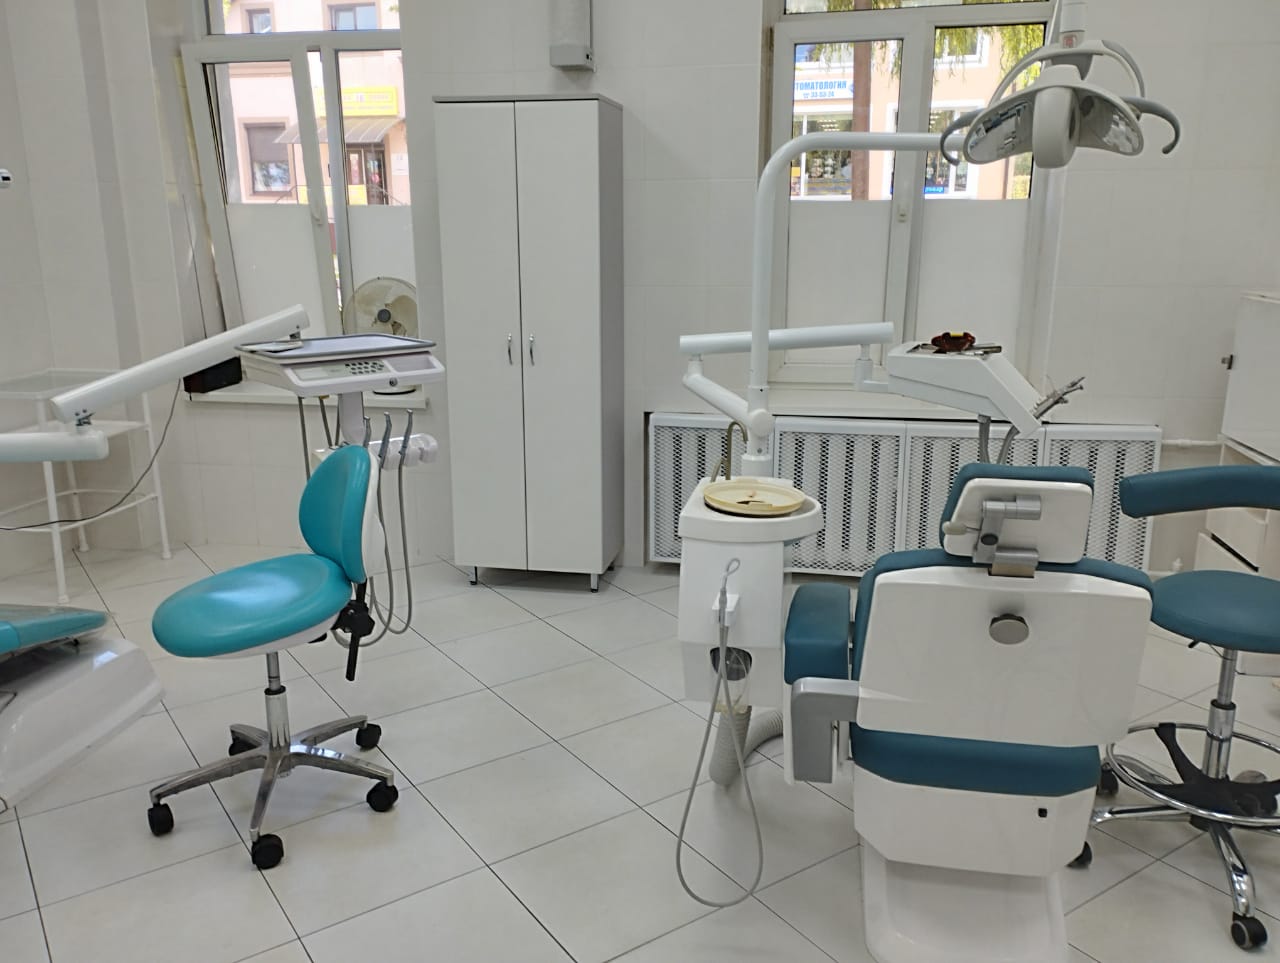 В трех отремонтированных кабинетах Мамоновской поликлиники принято около пяти тысяч пациентов